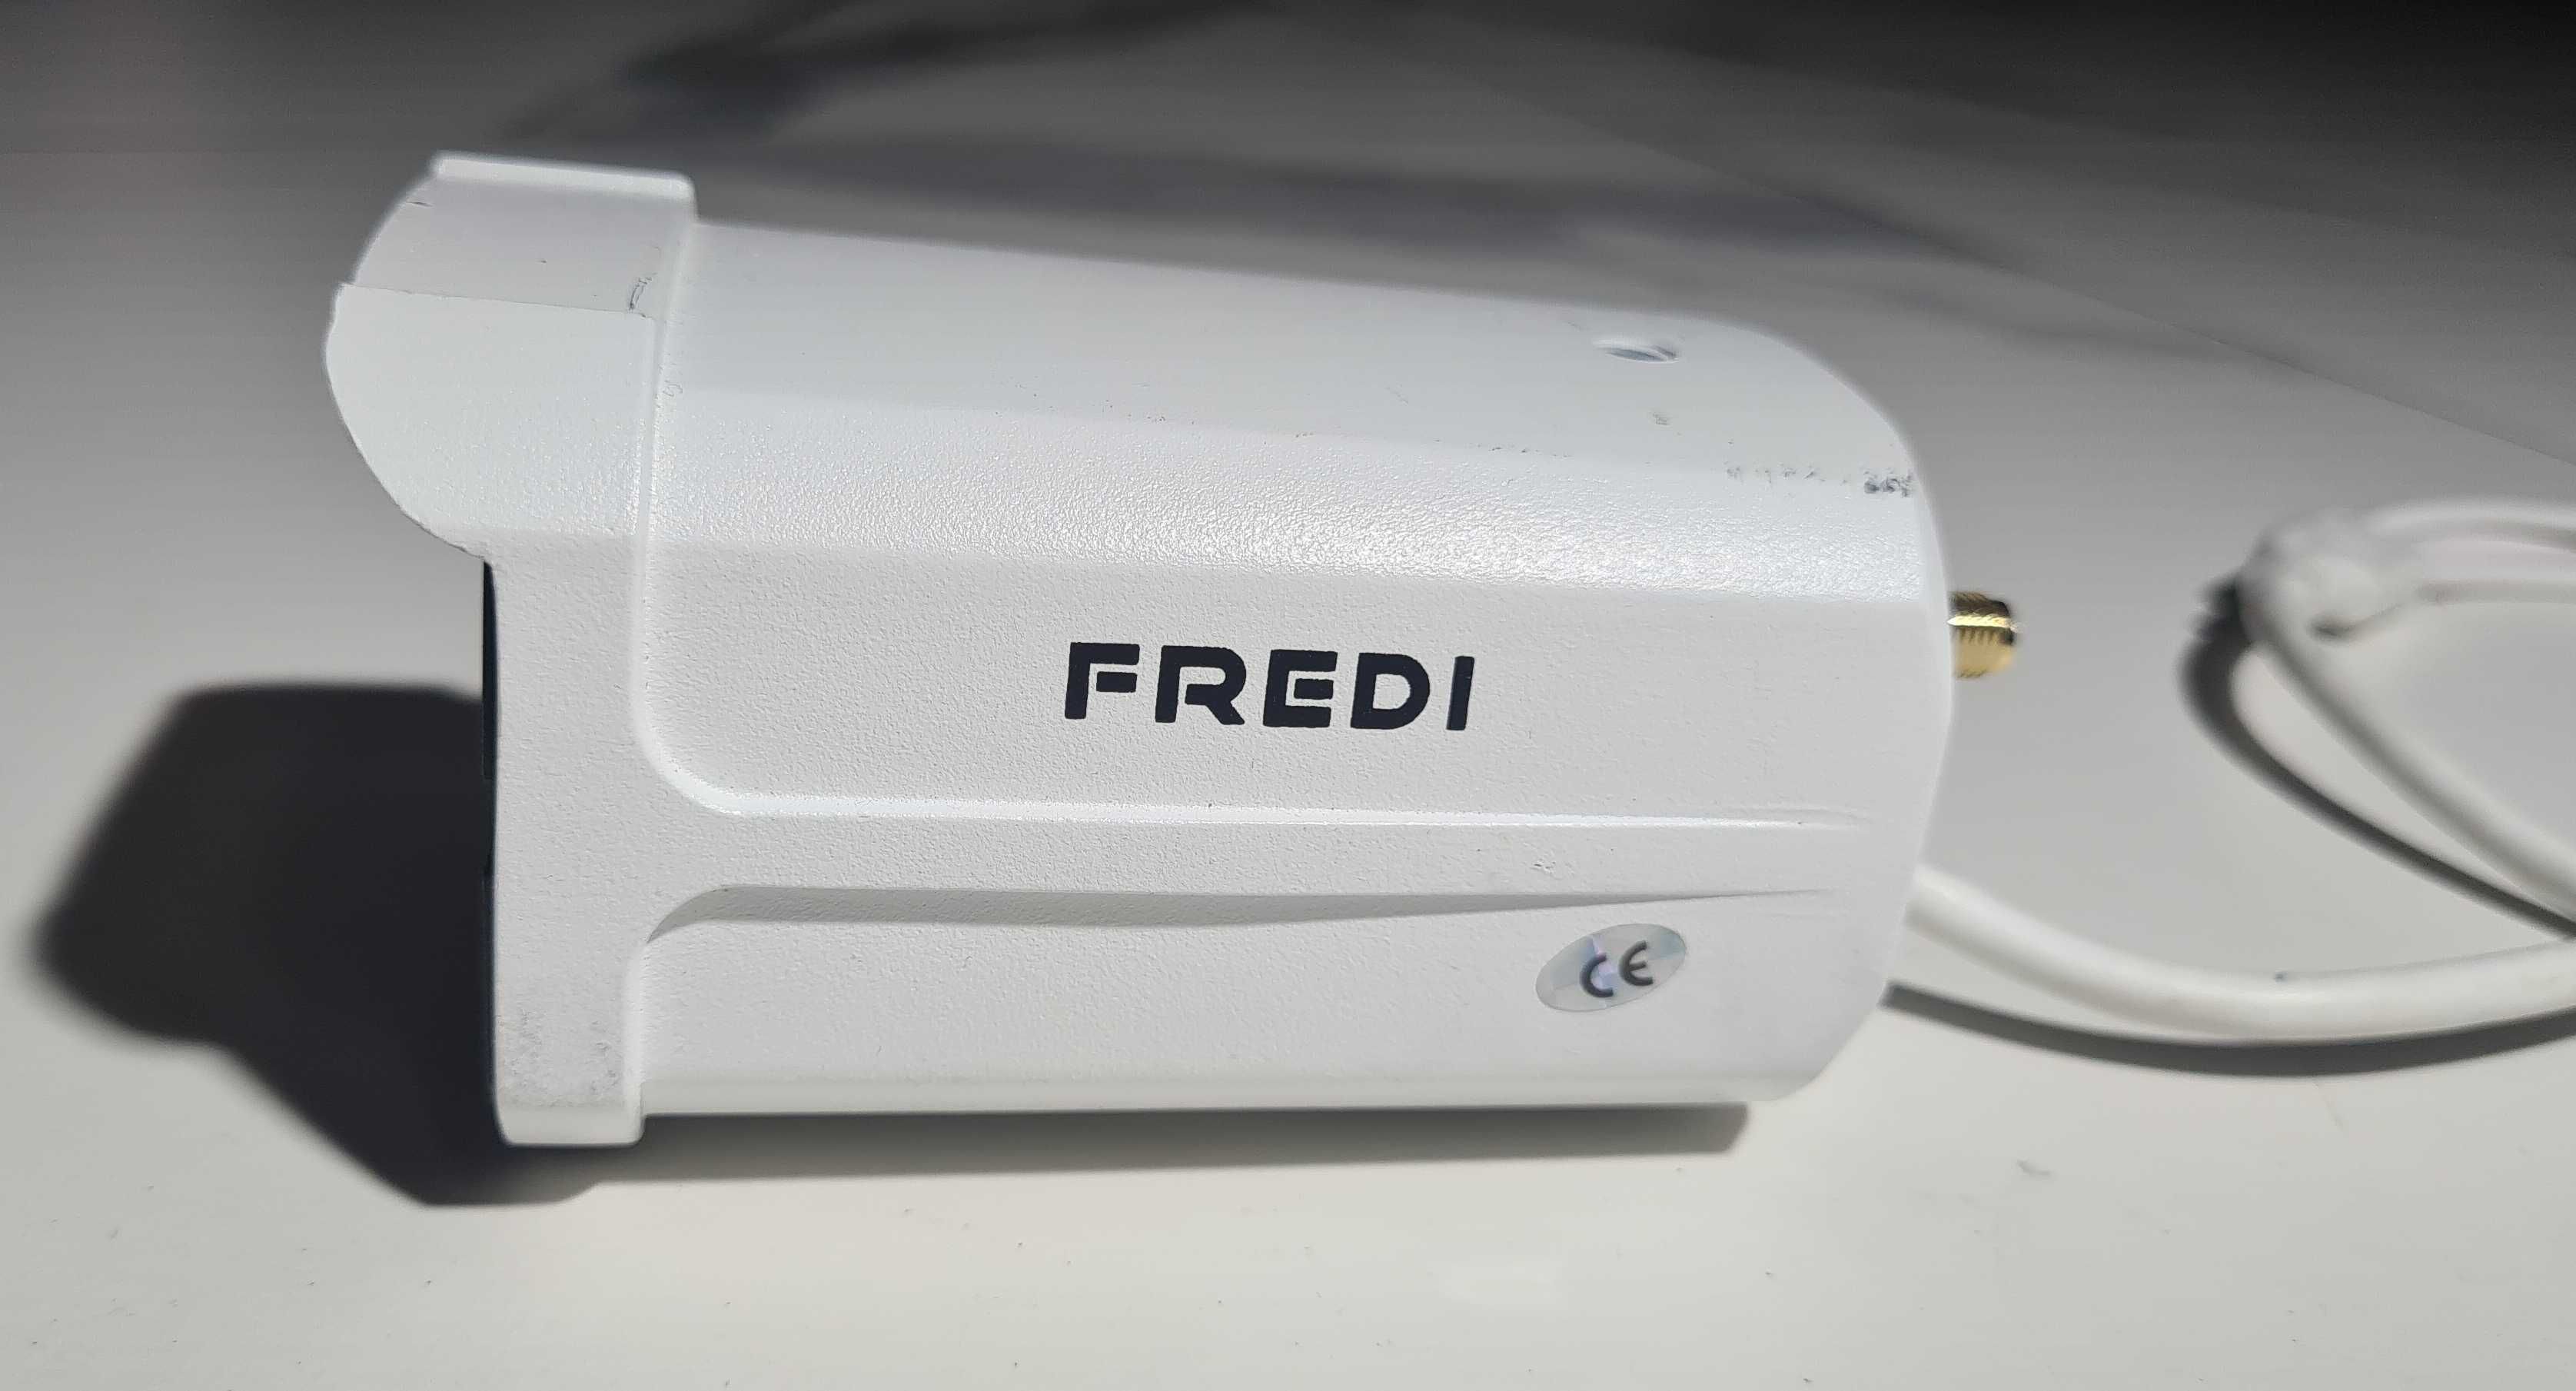 IP FREDI-LB807 Wi-Fi/Lan monitoring